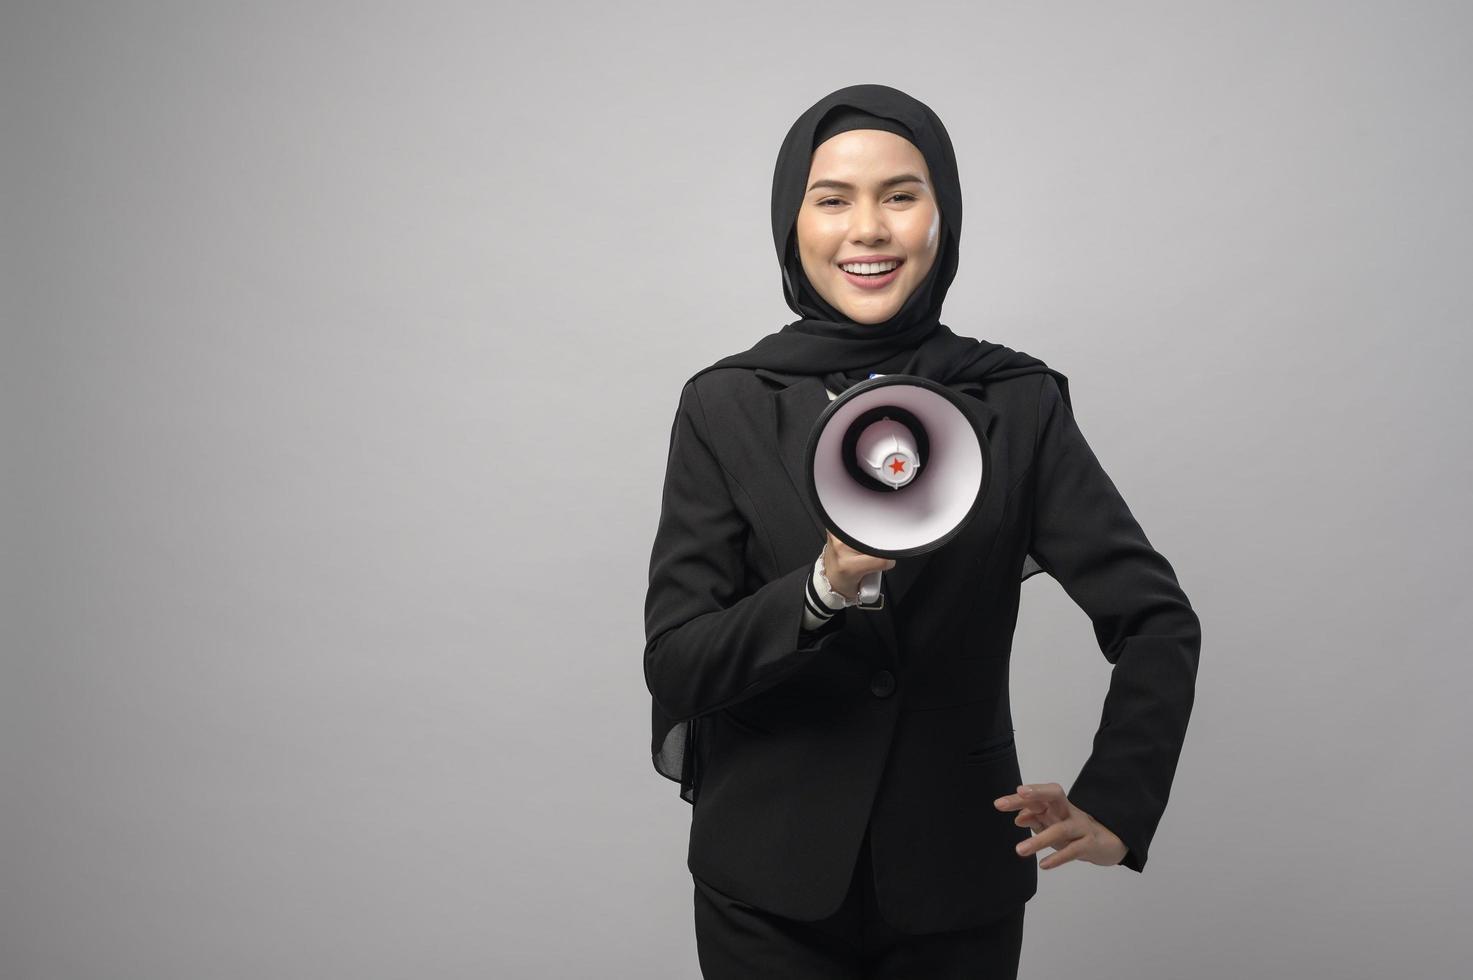 feliz mulher muçulmana está anunciando com megafone em fundo branco foto